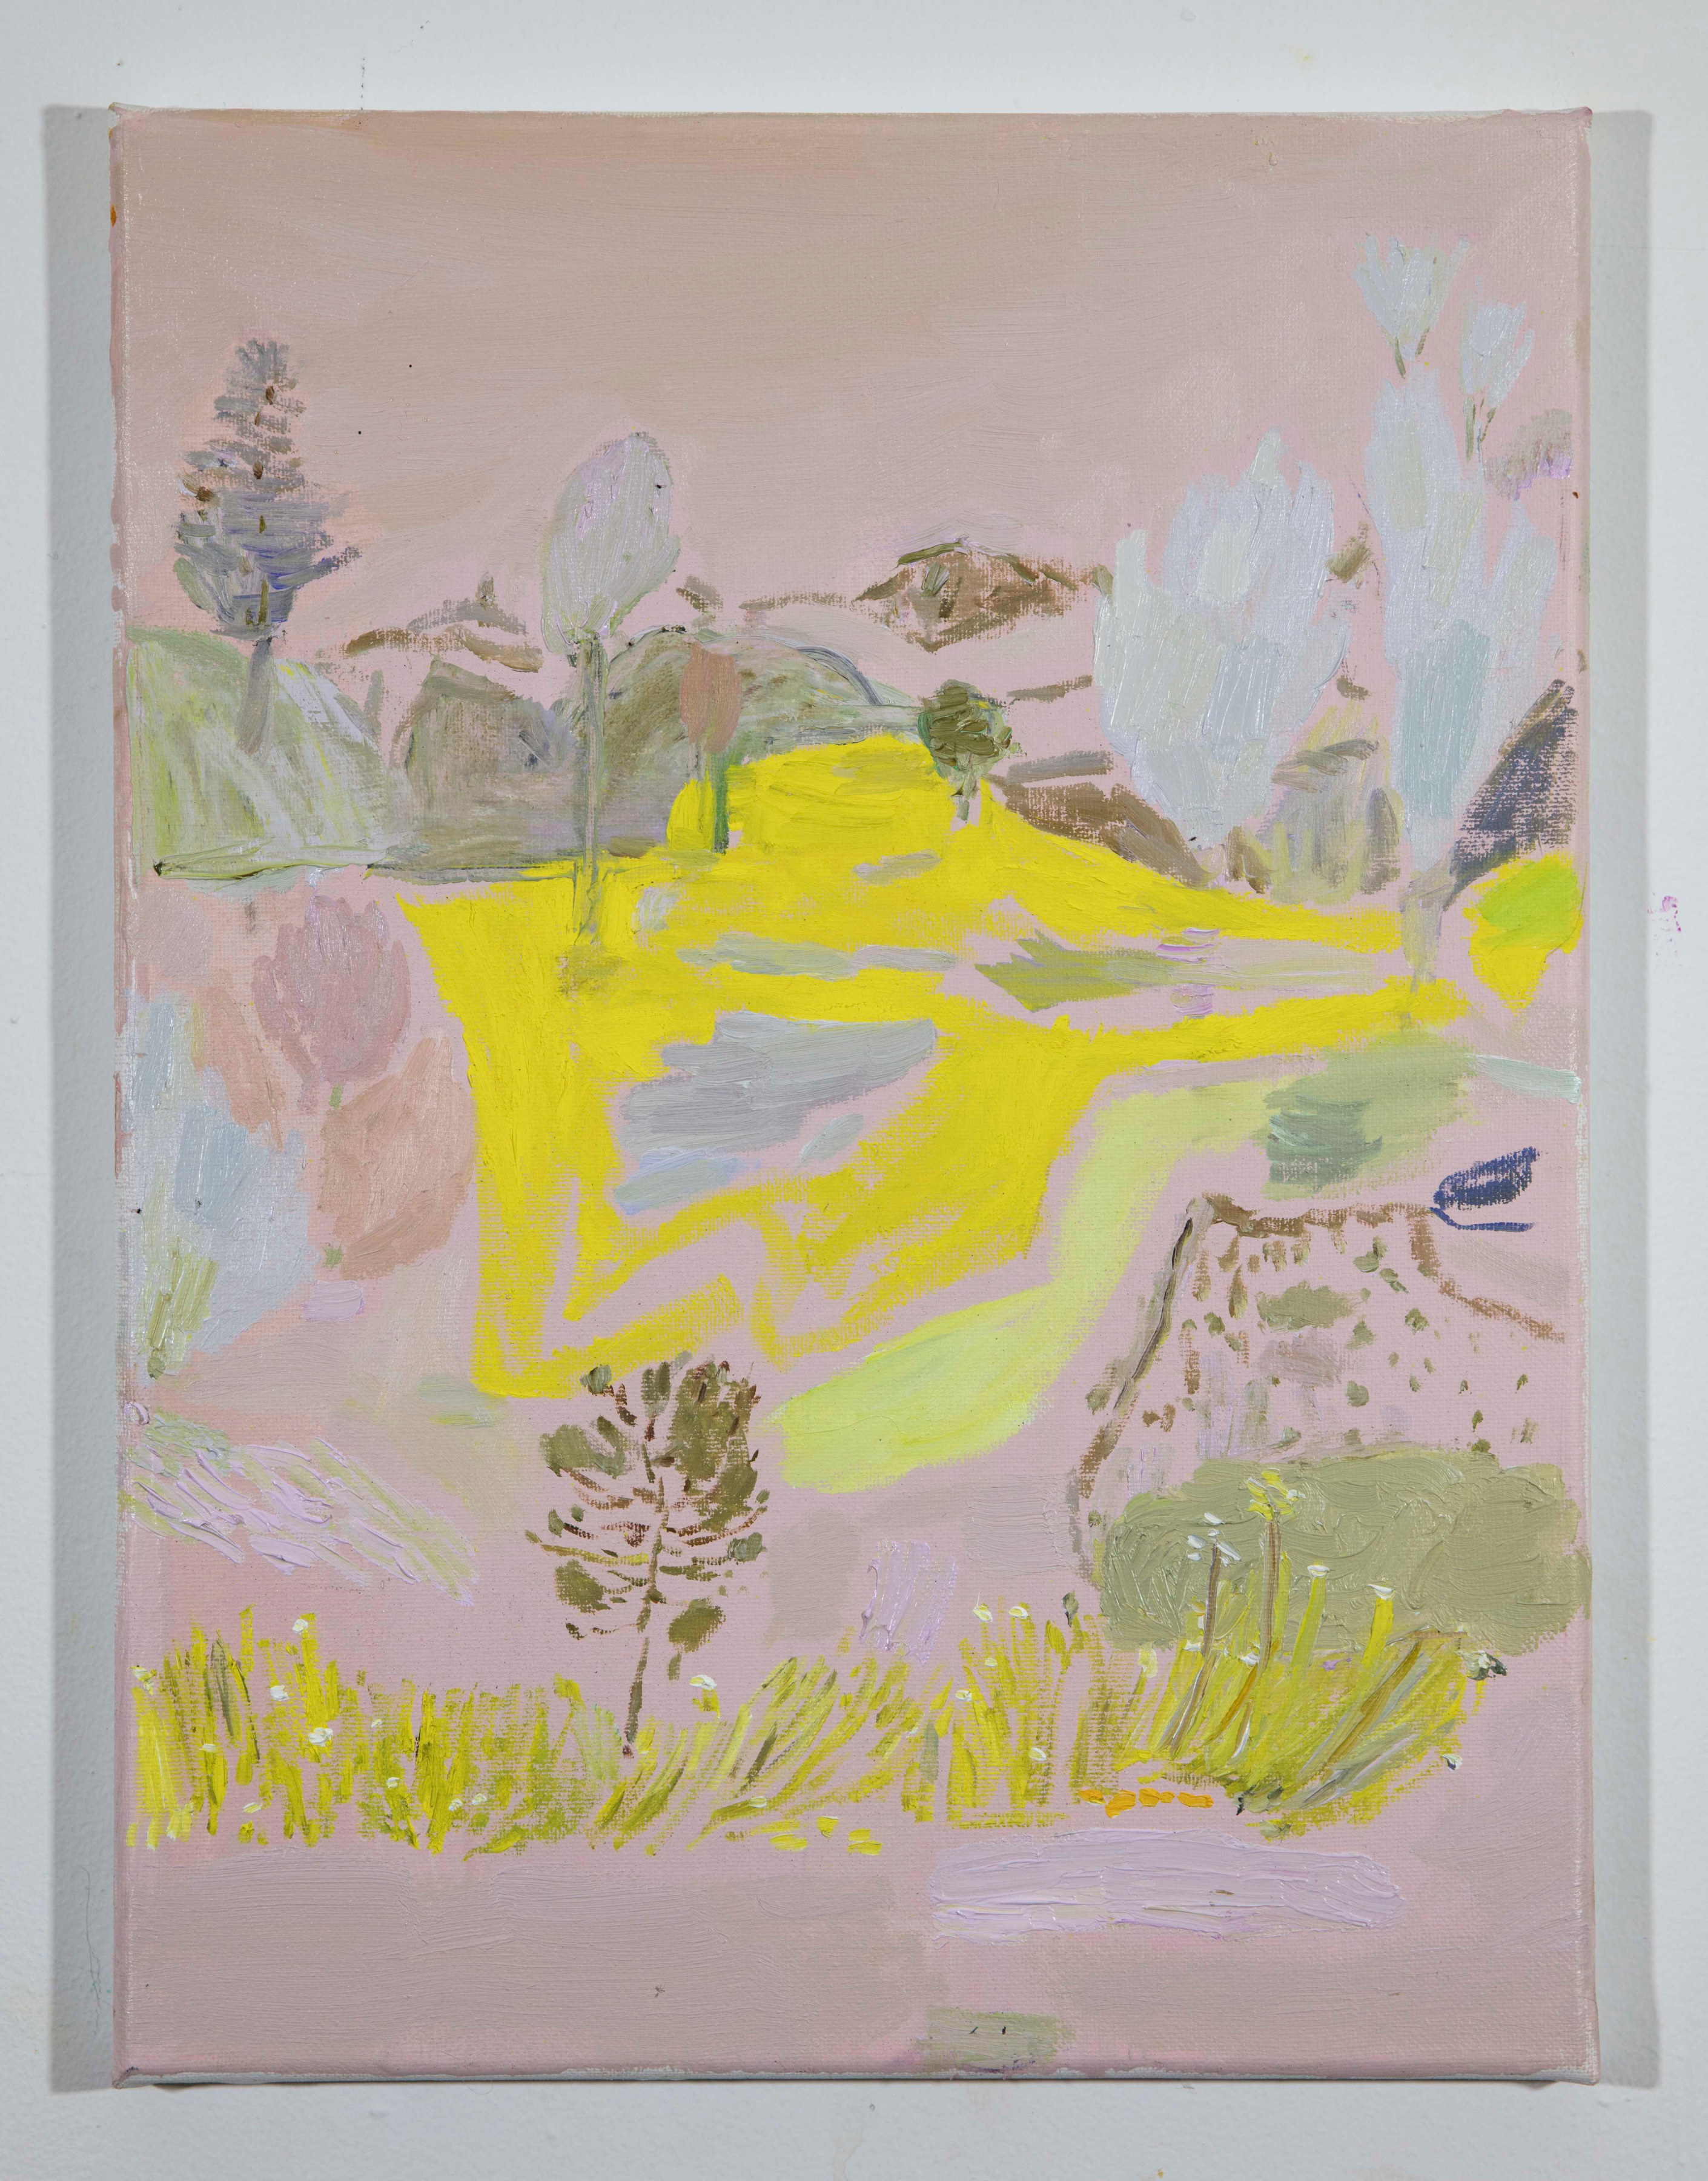 LISA SANDITZ, Landscape Color Study 9, 2019